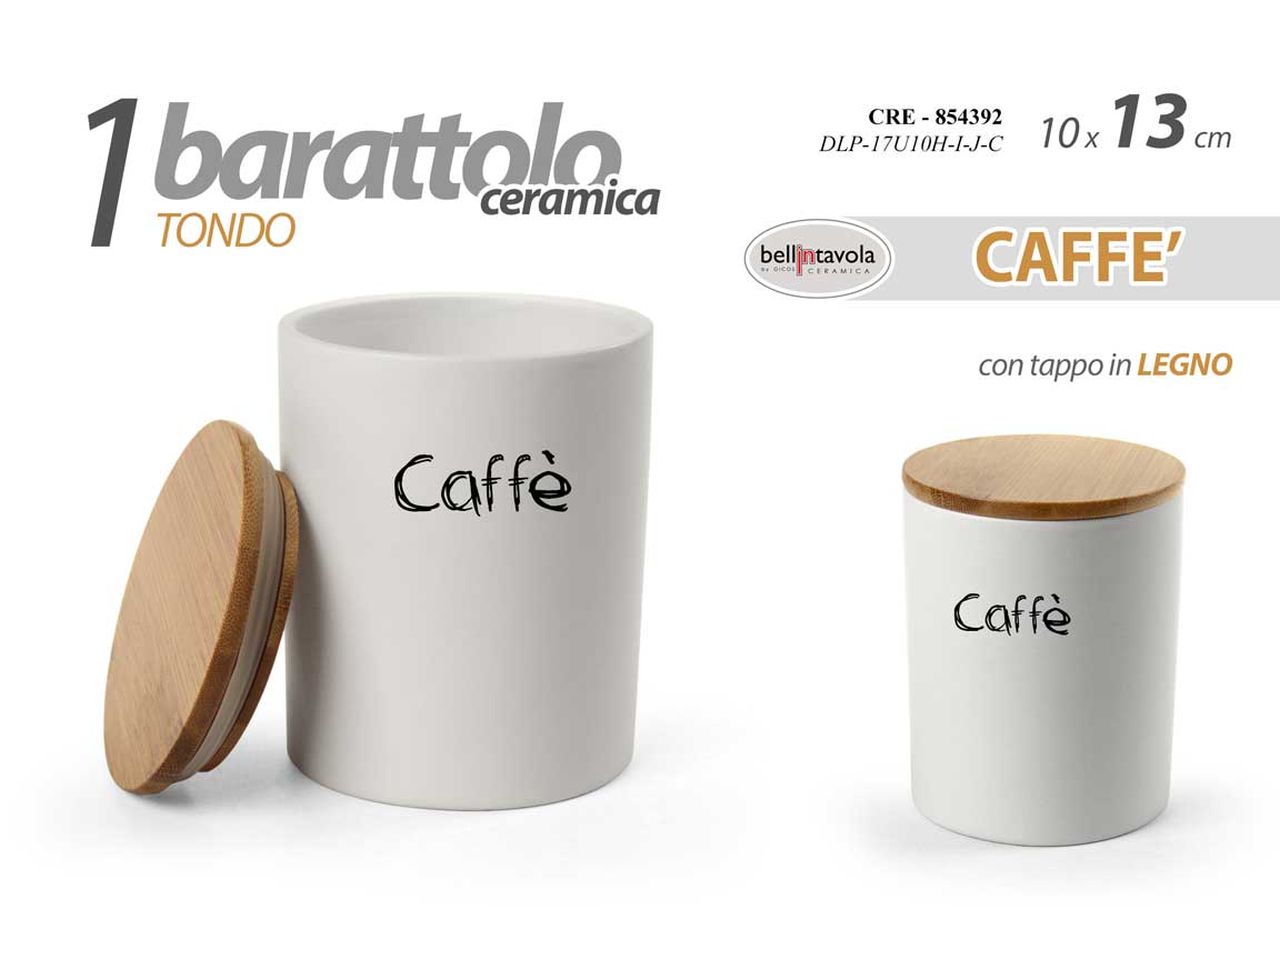 Barattolo caffè country in ceramica bianco con coperchio in legno, 13x10 cm - Bellintavola